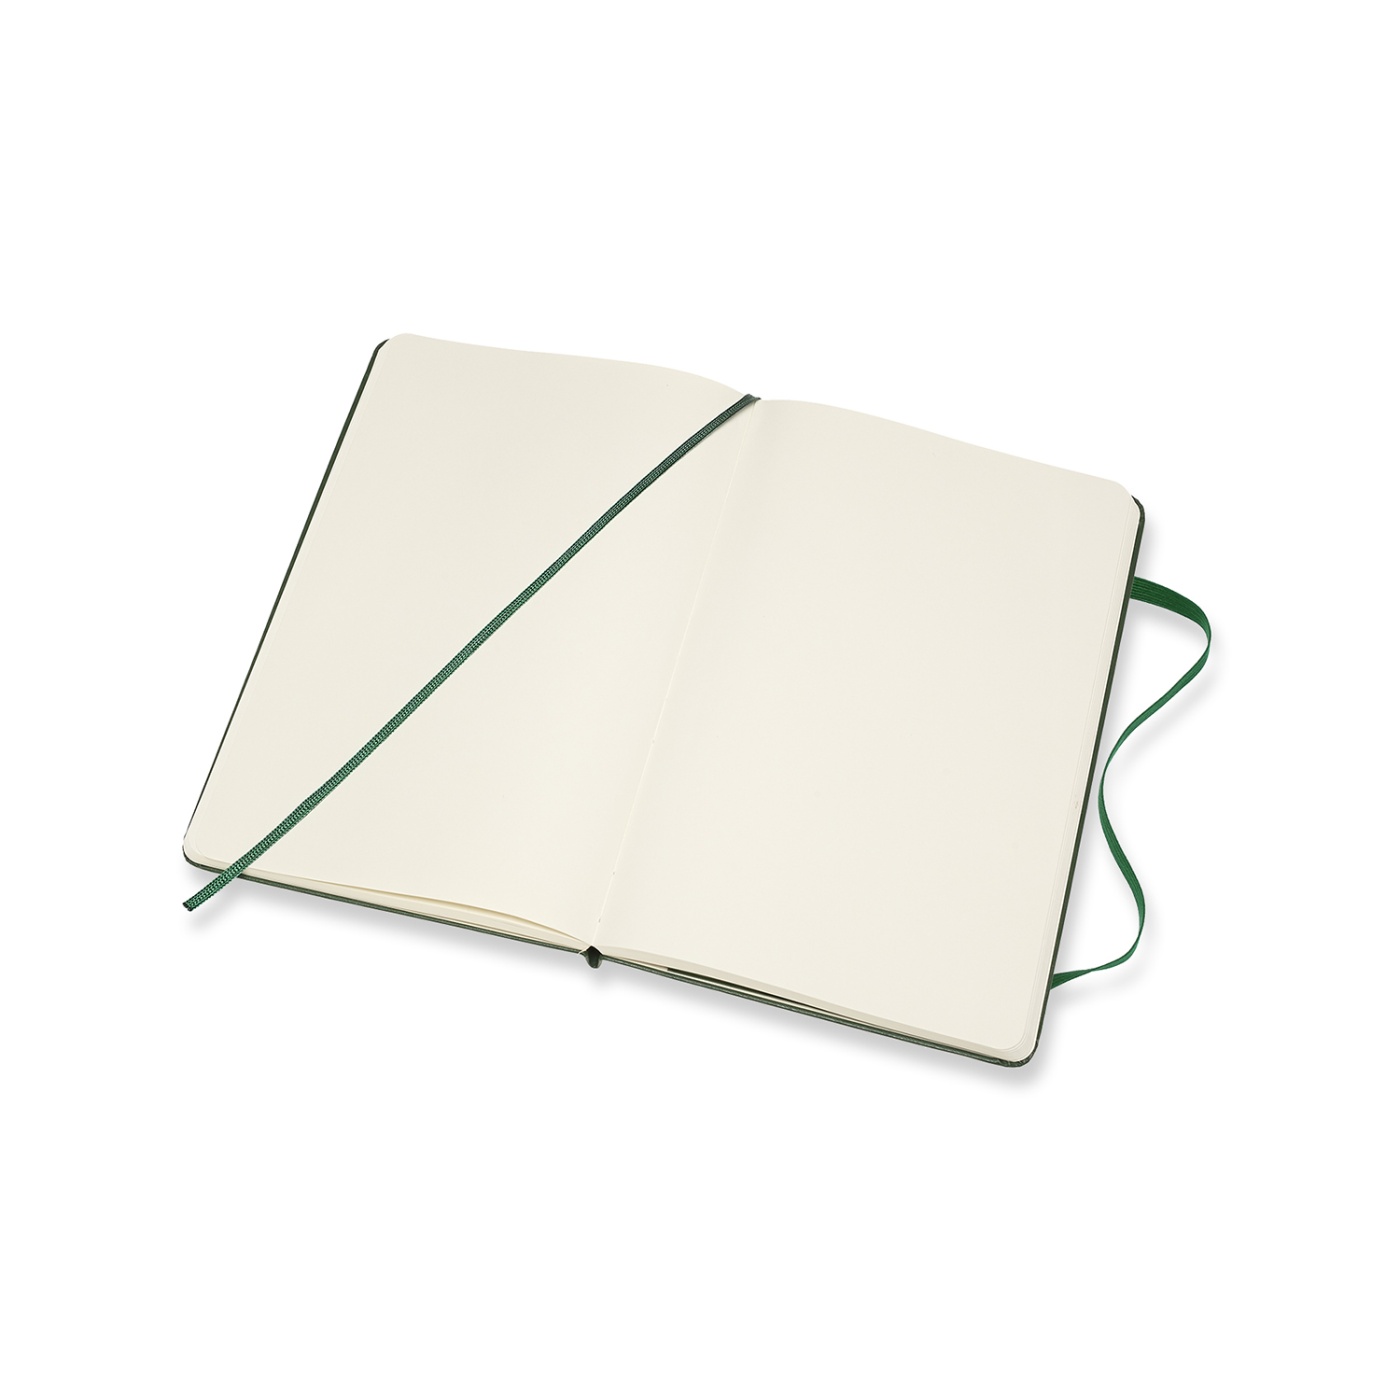 Classic Hardcover Large Myrtle Green in der Gruppe Papier & Blöcke / Schreiben und Notizen / Notizbücher bei Pen Store (100386_r)